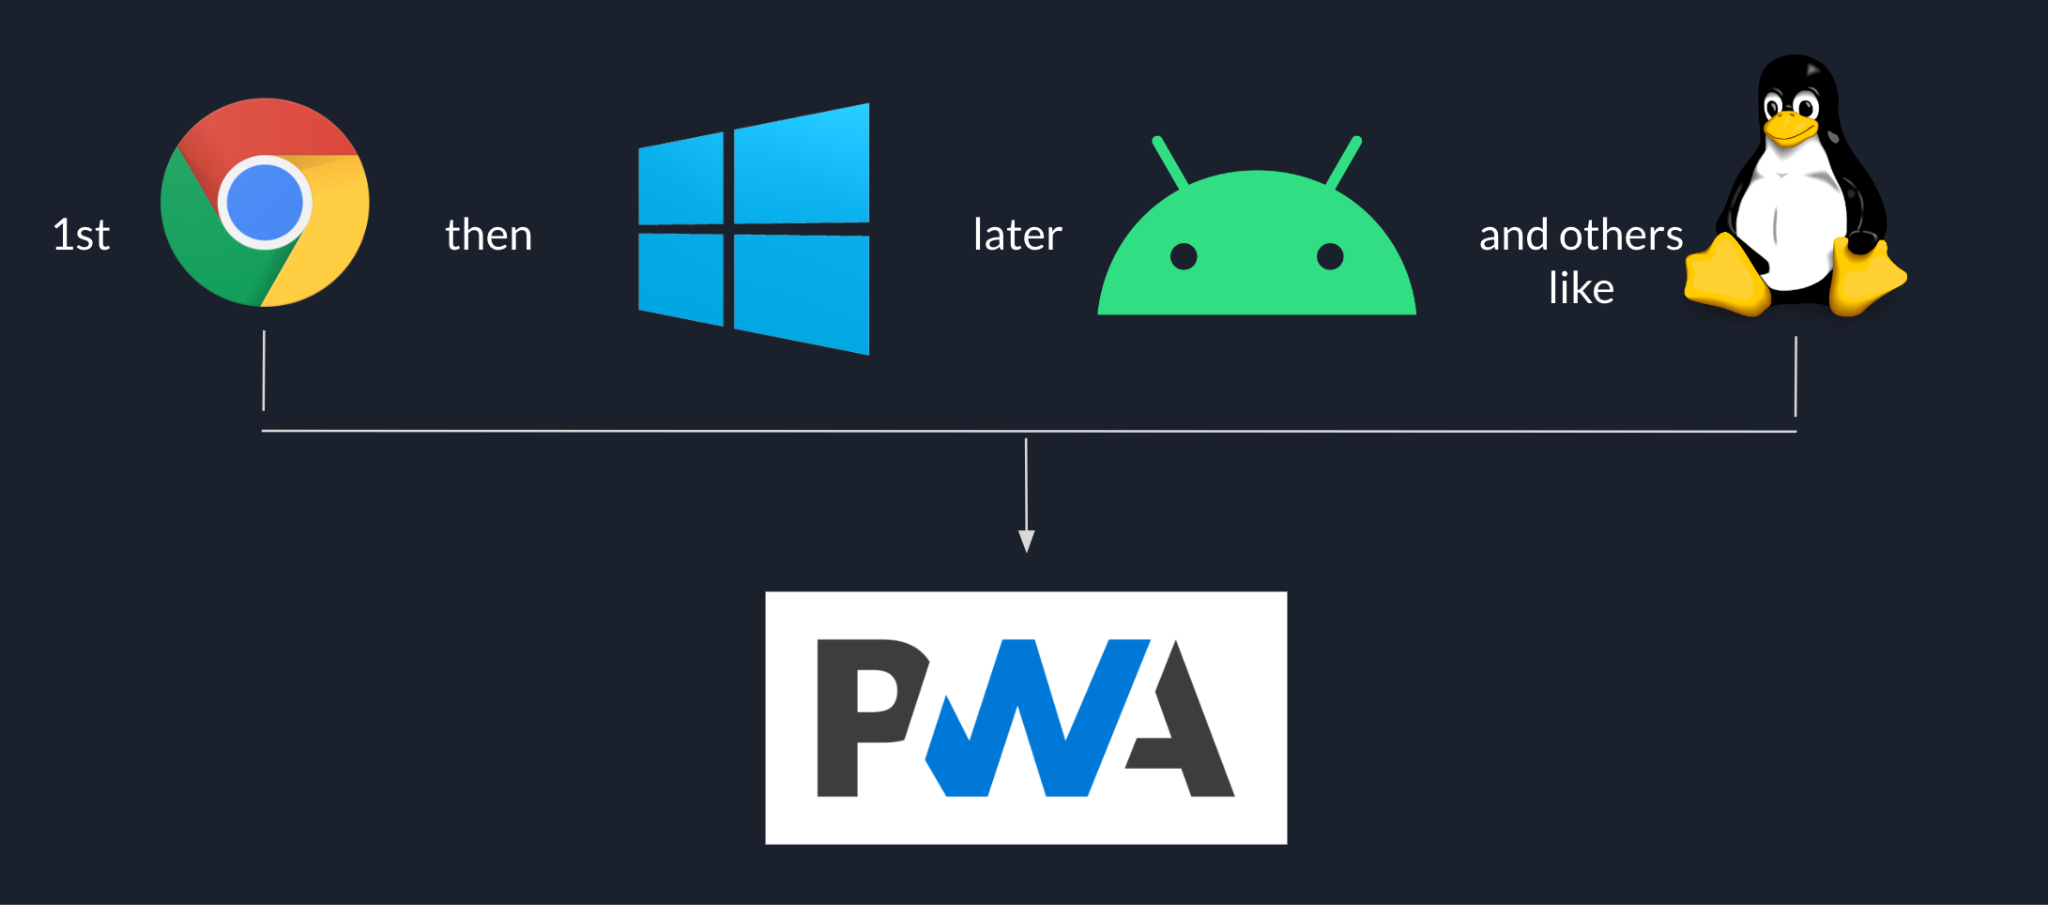 רצף ההשקה של Goodnotes מתחיל ב-Chrome, לאחר מכן ב-Windows, אחריו ב-Android ובפלטפורמות אחרות כמו Linux, והכל על סמך ה-PWA.